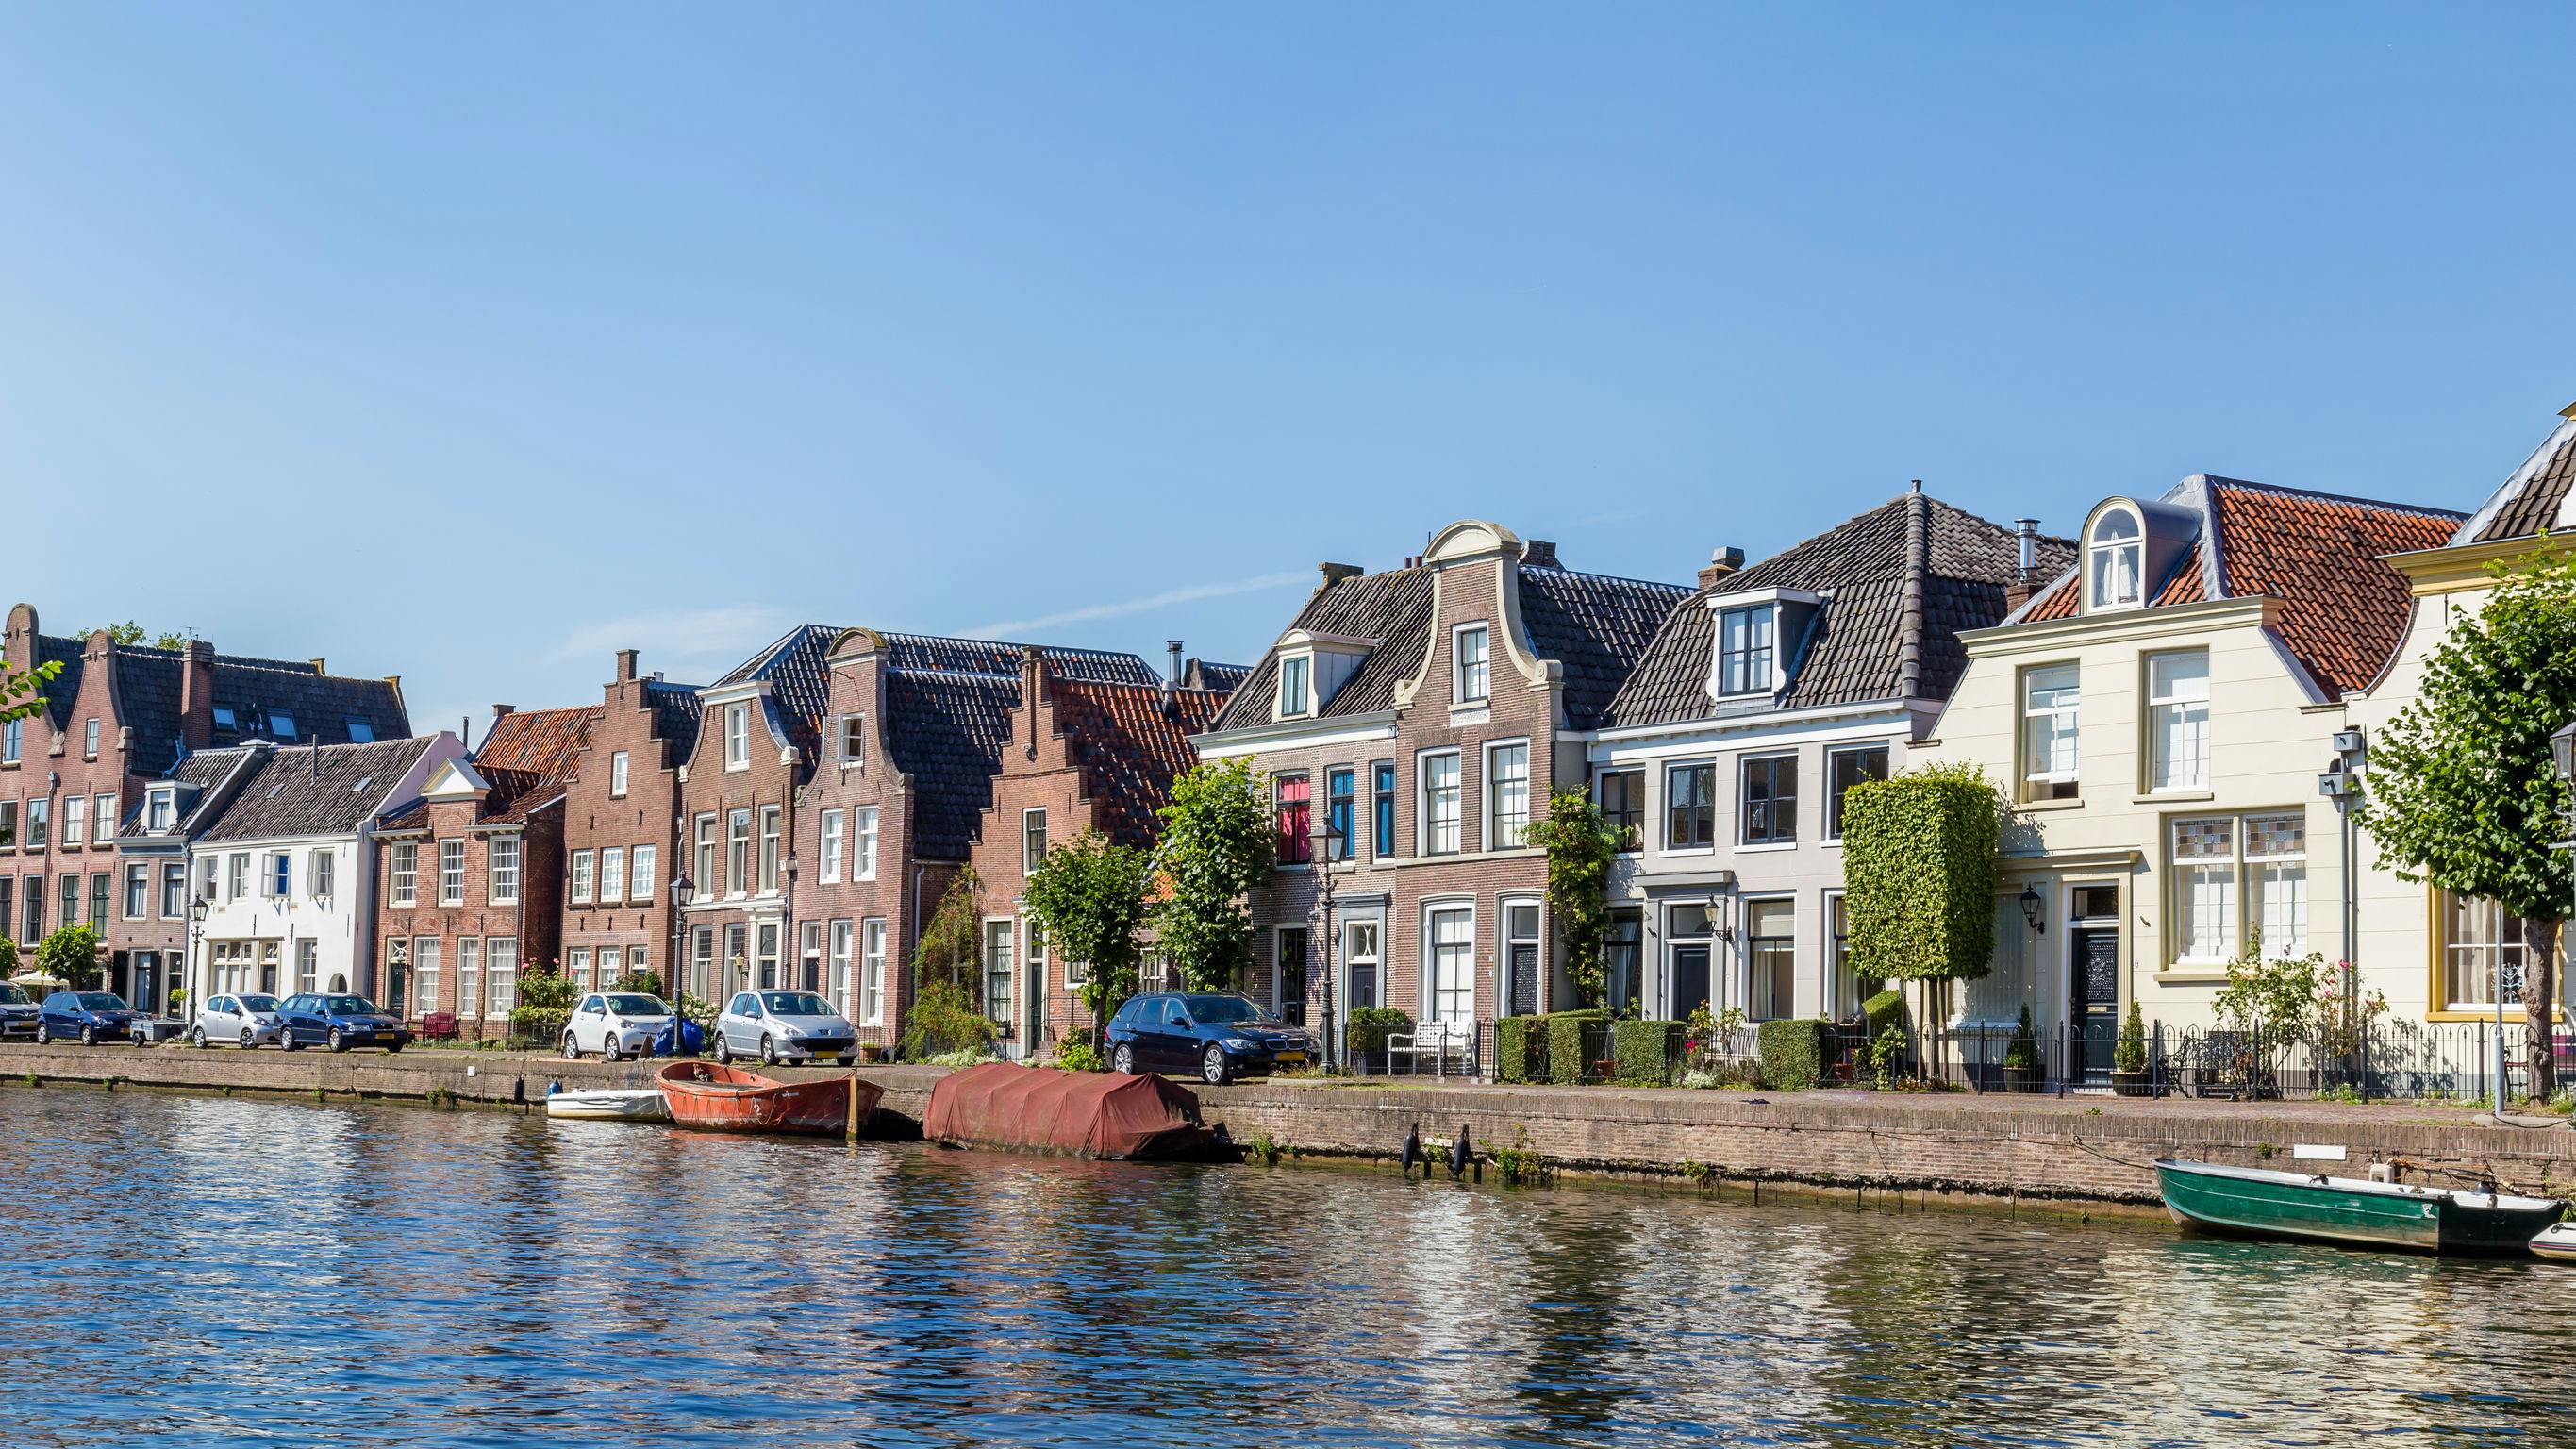 Excursão privada e cruzeiro com almoço no Rio Vecht saindo de Amsterdã